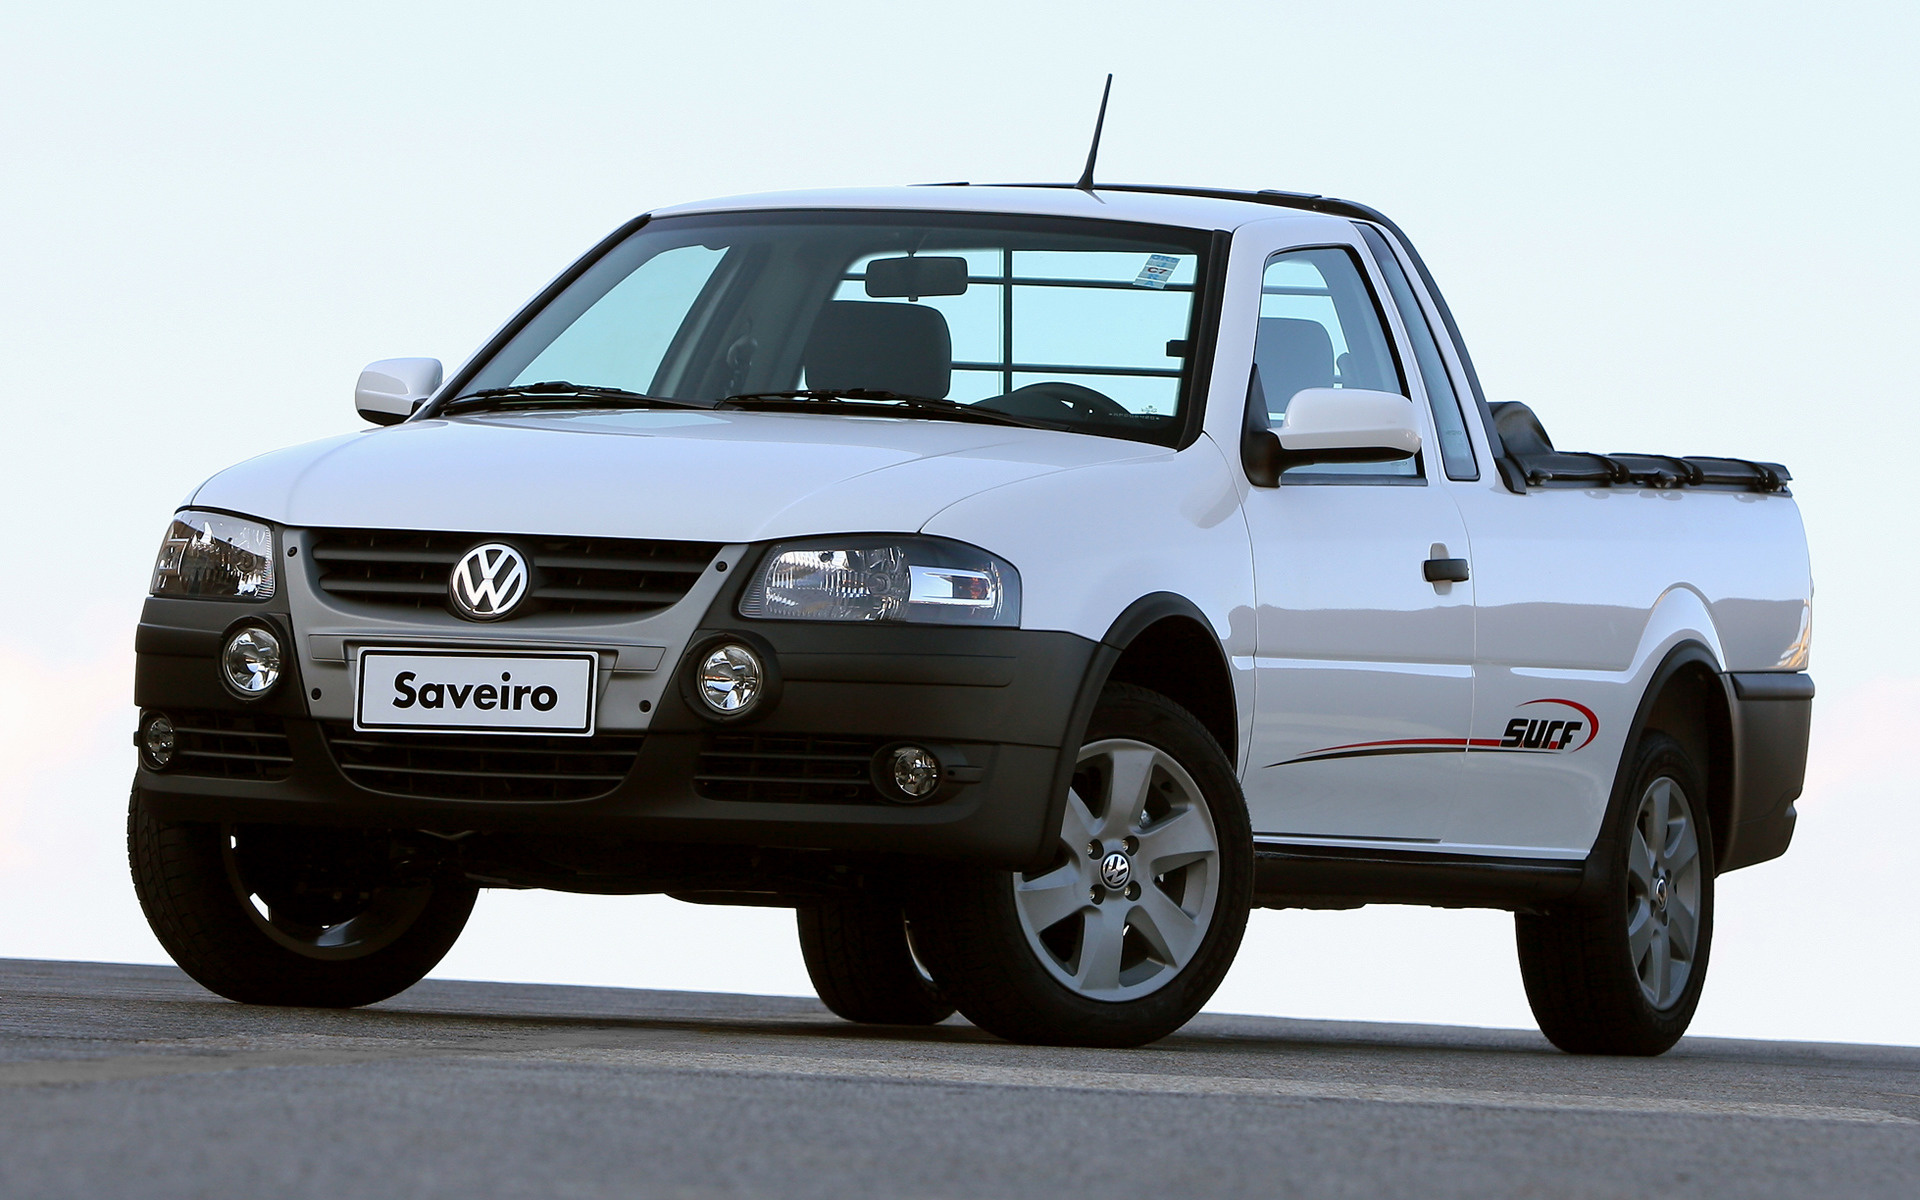 Volkswagen Saveiro Wallpapers